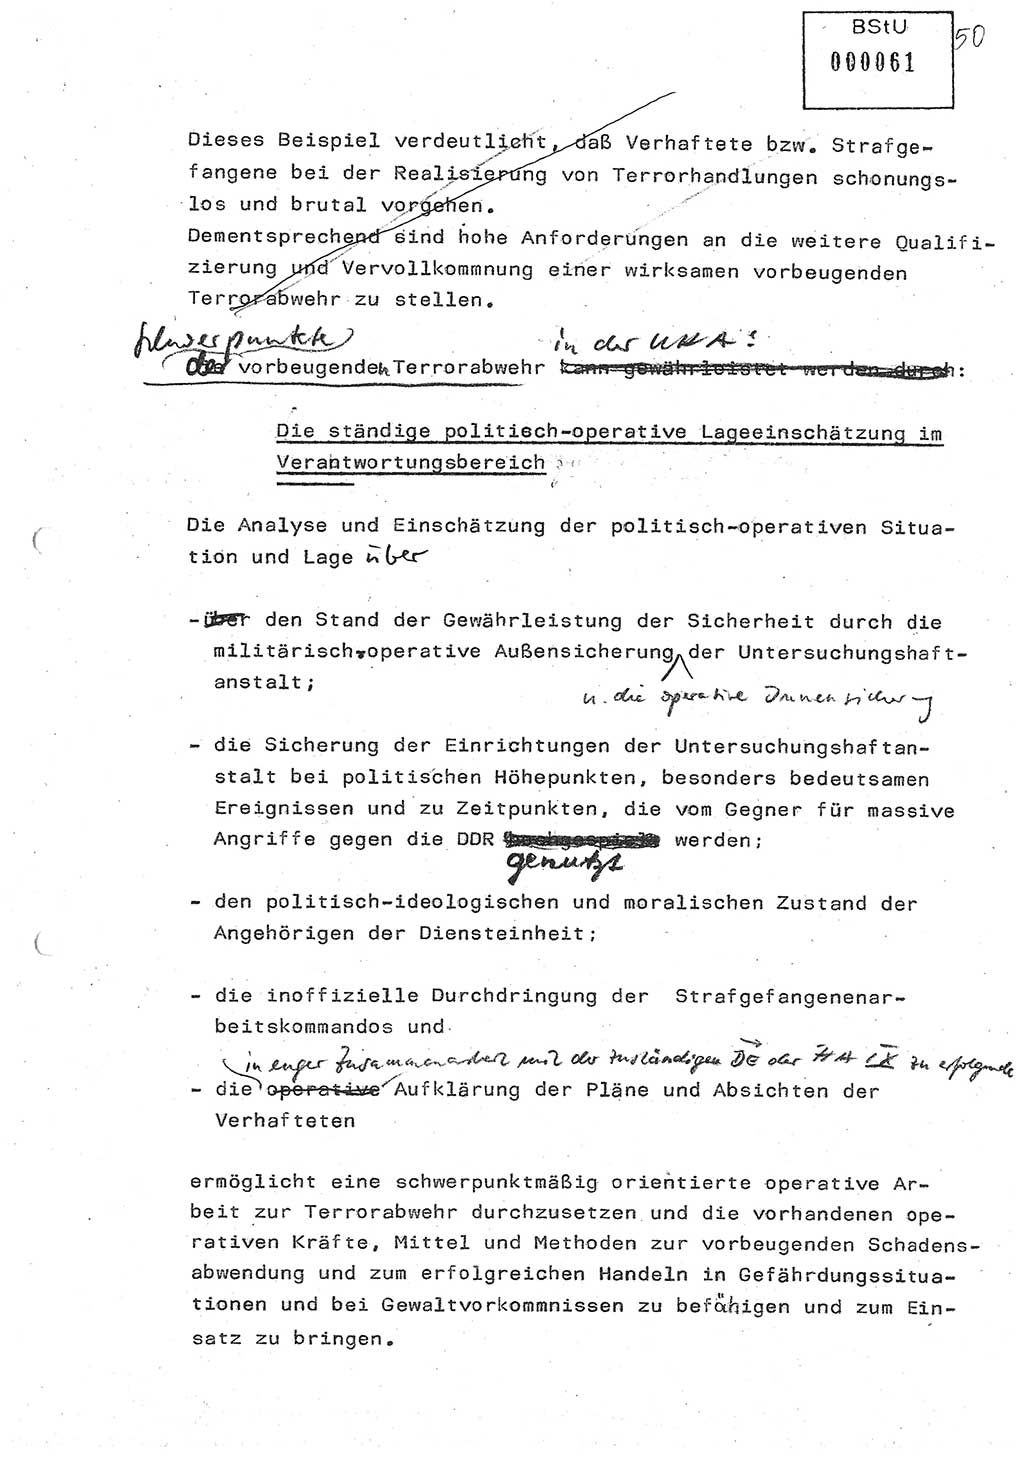 Diplomarbeit (Entwurf) Oberleutnant Peter Parke (Abt. ⅩⅣ), Ministerium für Staatssicherheit (MfS) [Deutsche Demokratische Republik (DDR)], Juristische Hochschule (JHS), Geheime Verschlußsache (GVS) o001-98/86, Potsdam 1986, Seite 61 (Dipl.-Arb. MfS DDR JHS GVS o001-98/86 1986, S. 61)